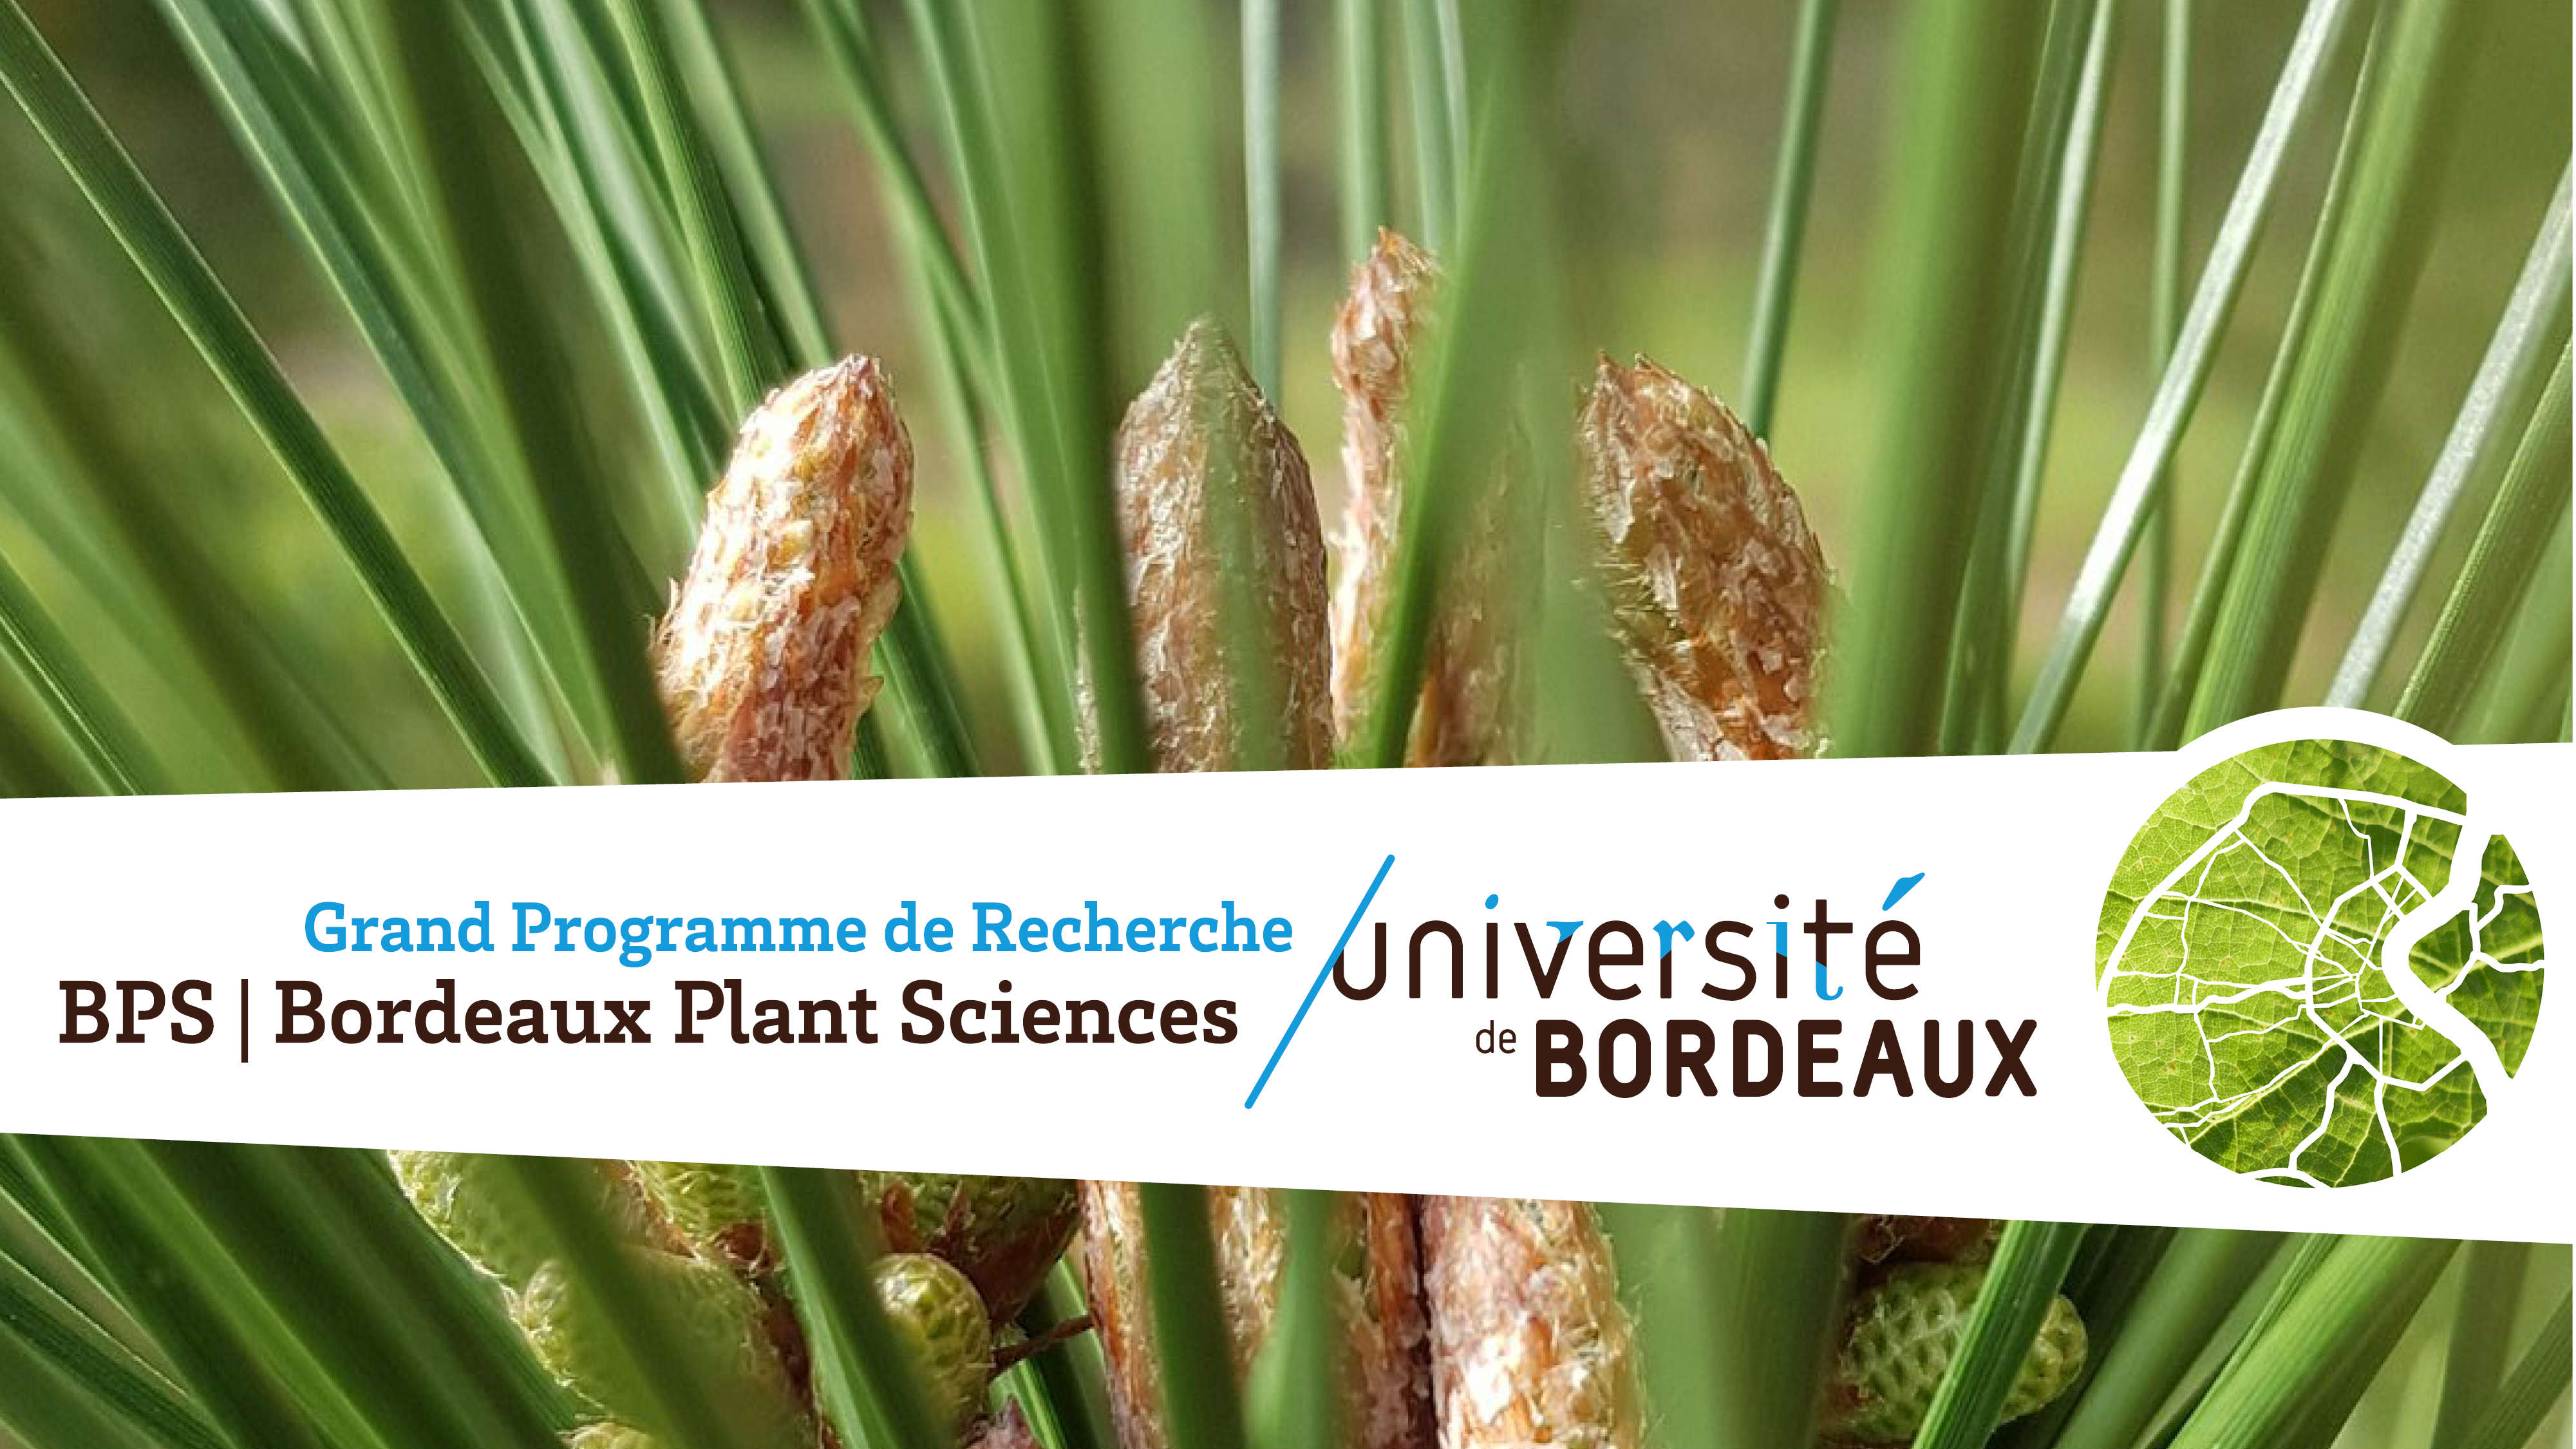 GPR - Bordeaux Plant Sciences